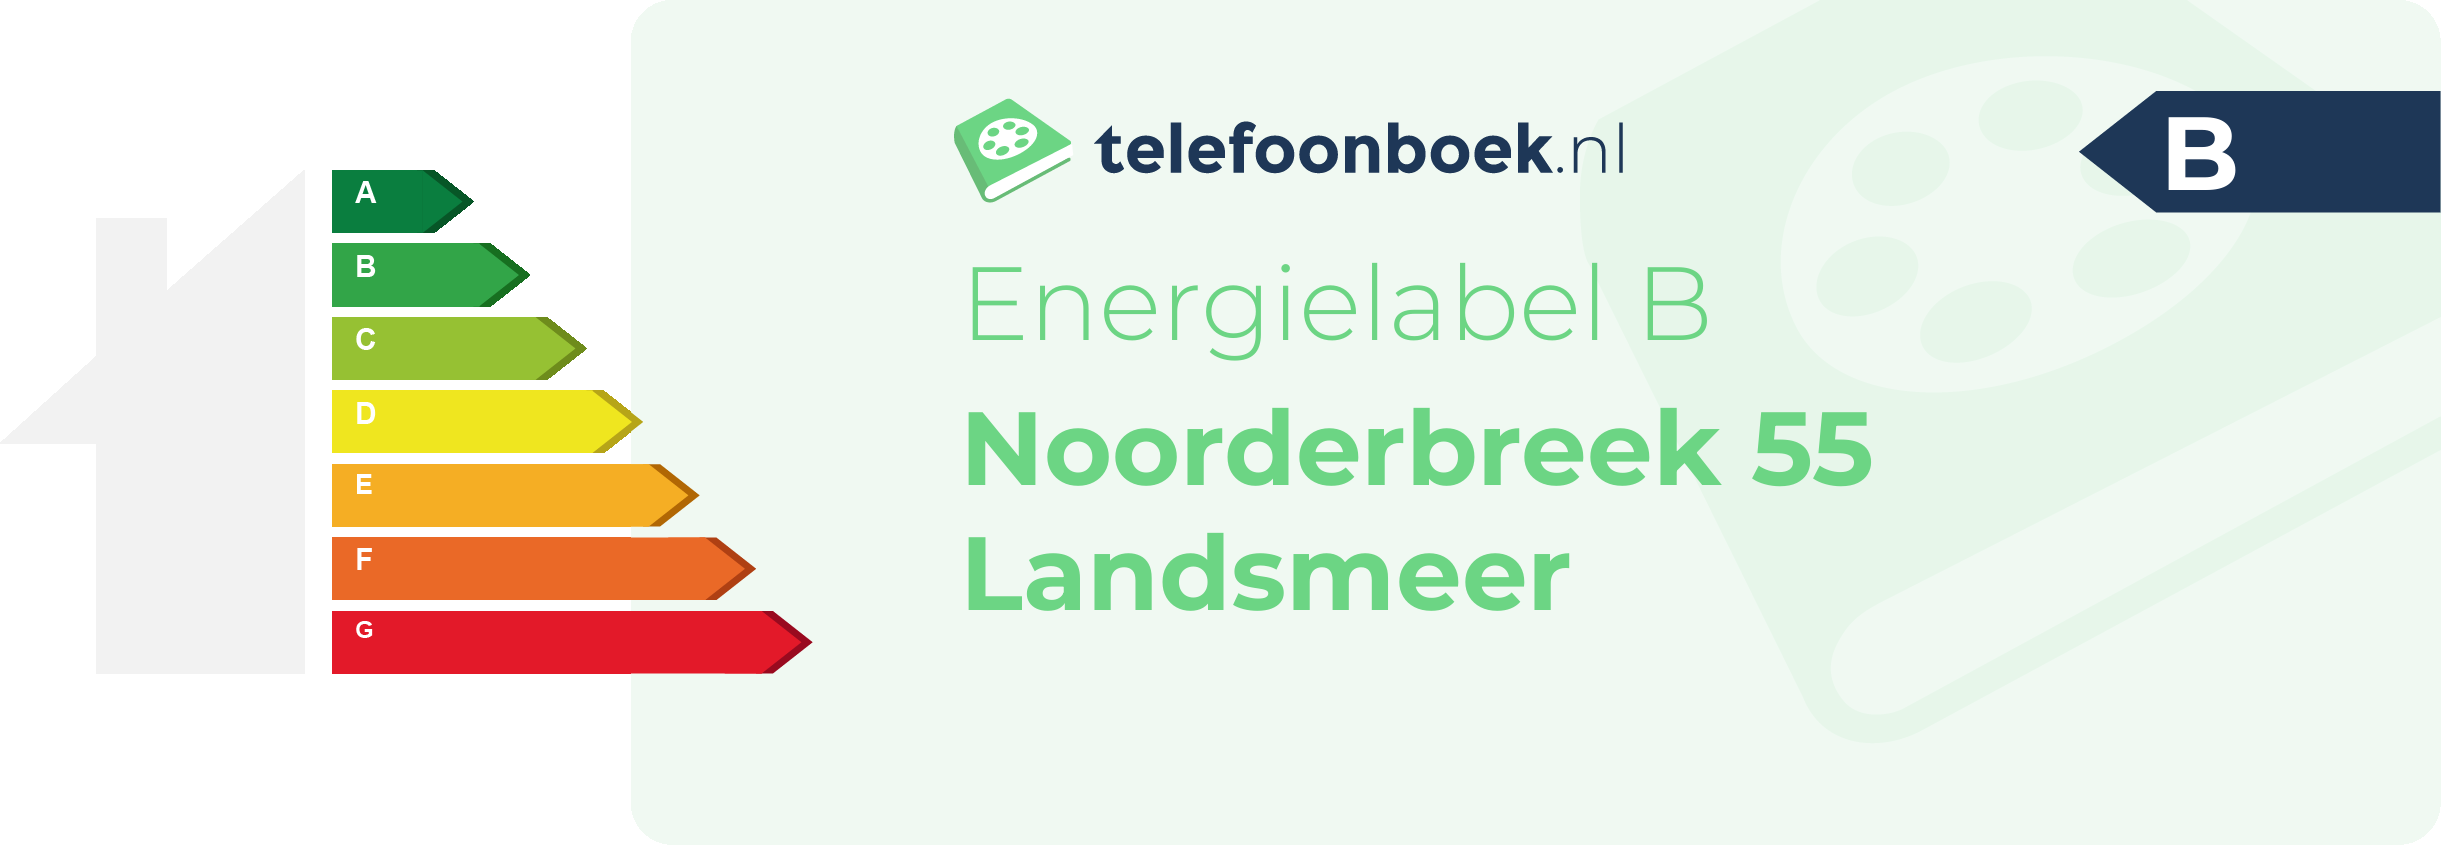 Energielabel Noorderbreek 55 Landsmeer